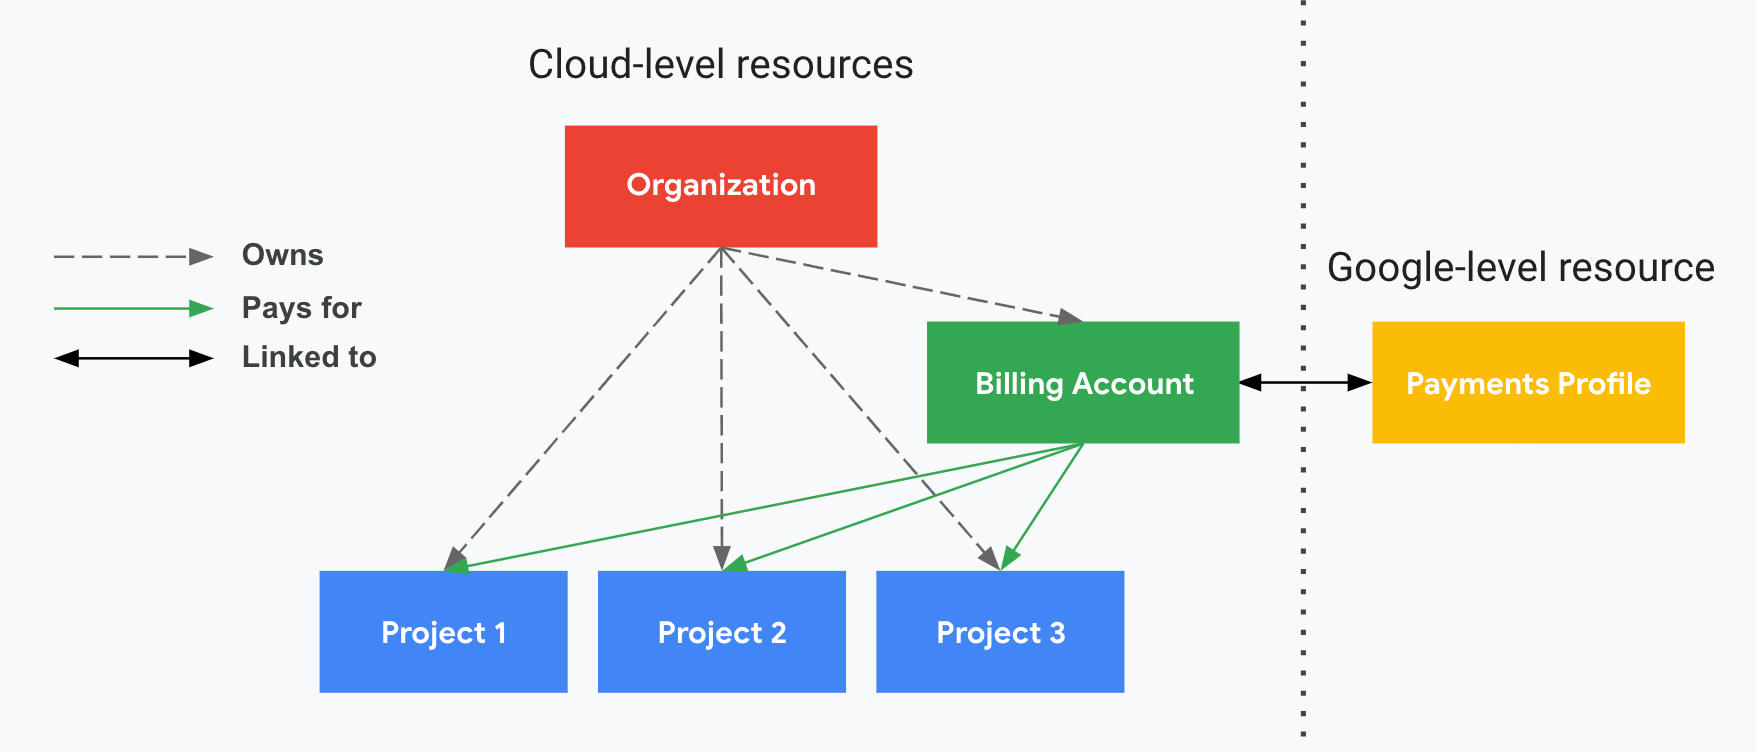 Dieses Diagramm zeigt, wie sich Projekte auf Cloud Billing und Ihr Zahlungsprofil beziehen. Auf der einen Seite werden Ihre Ressourcen auf Cloud-Ebene angezeigt (Cloud-Rechnungskonto und zugehörige Projekte) und auf der anderen Seite Ihre Ressource auf Google-Ebene (Zahlungsprofil), die durch eine gepunktete vertikale Linie getrennt ist. Ihre Projekte werden über Ihr Cloud-Rechnungskonto bezahlt, das mit Ihrem Zahlungsprofil verknüpft ist.